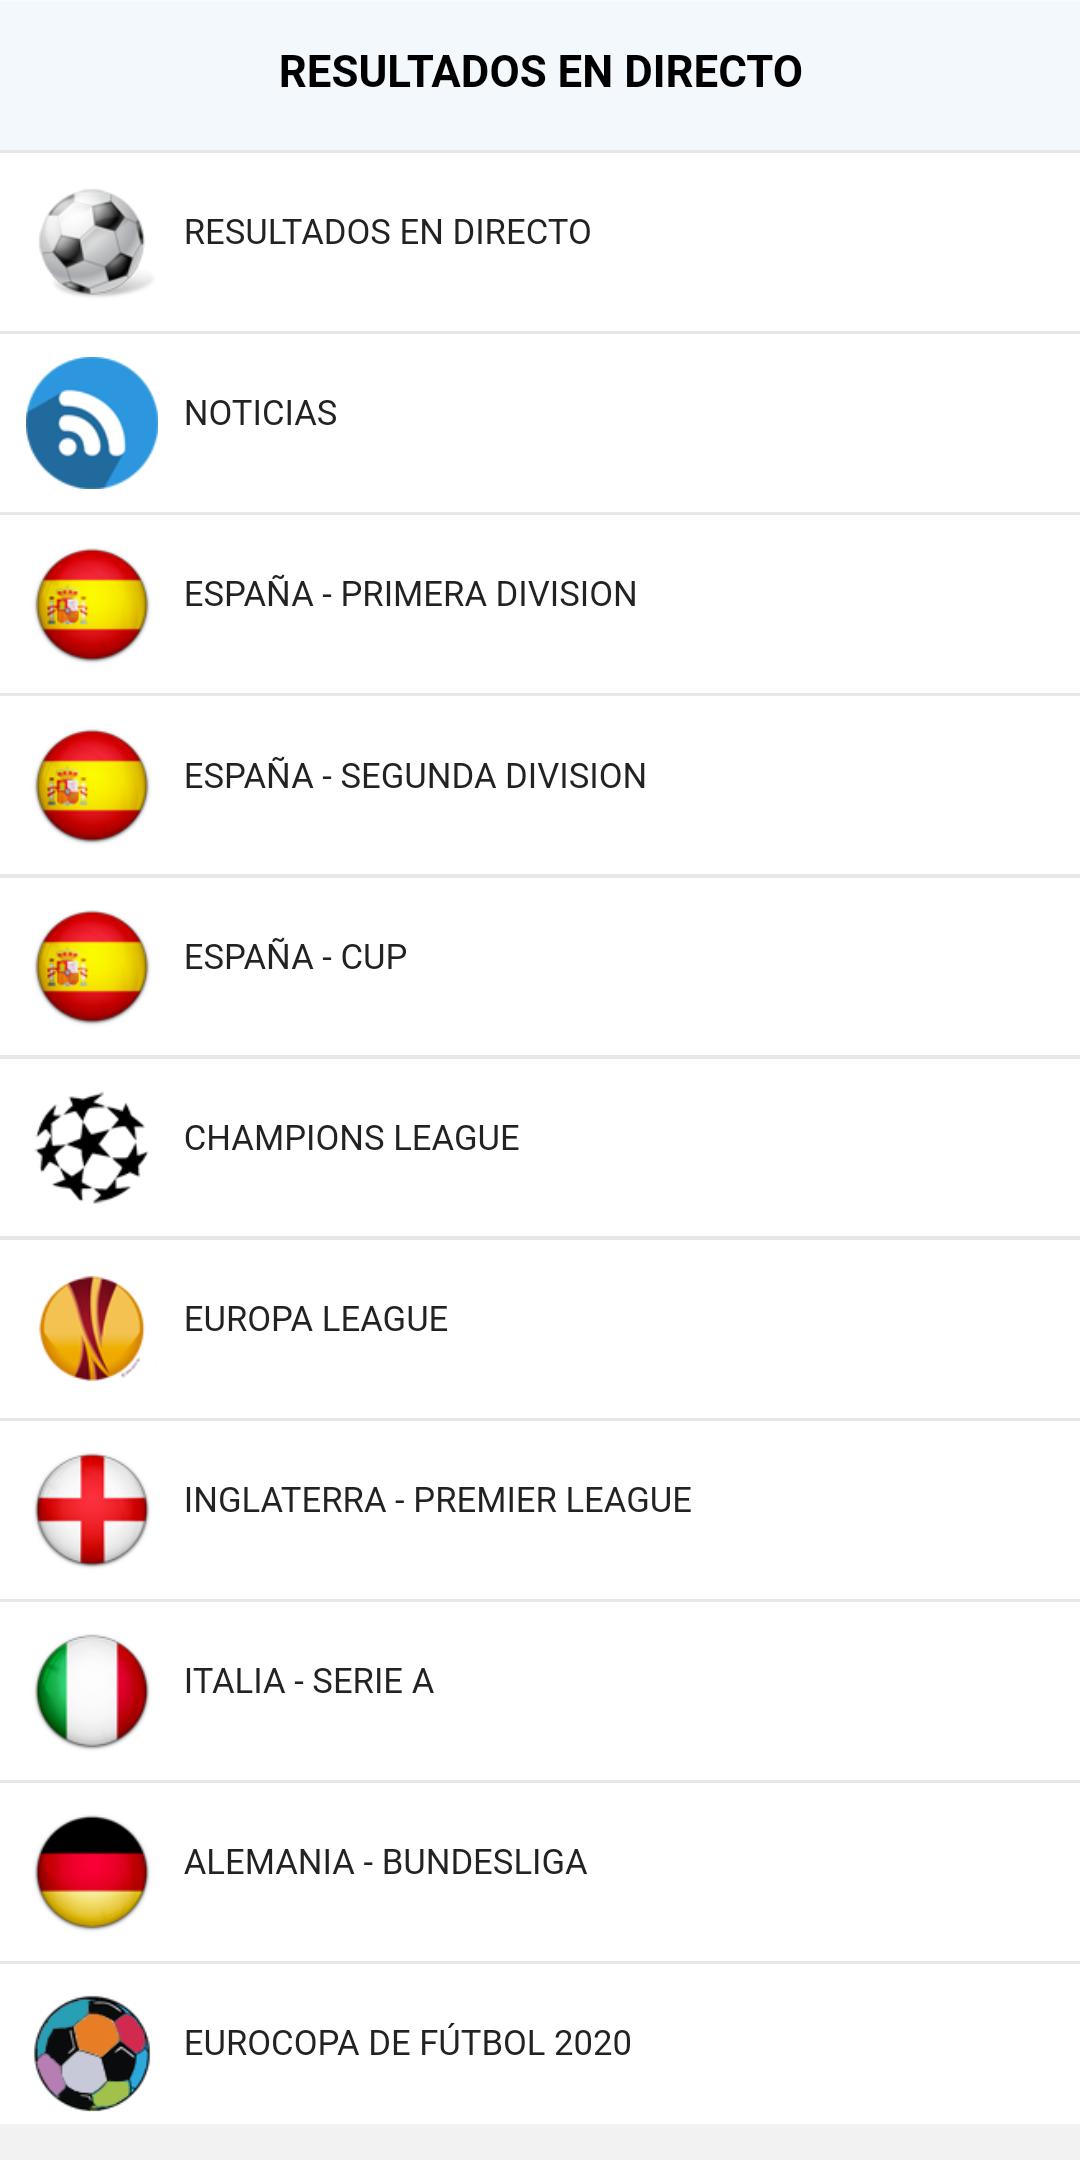 Fútbol resultados en directo for Android - APK Download